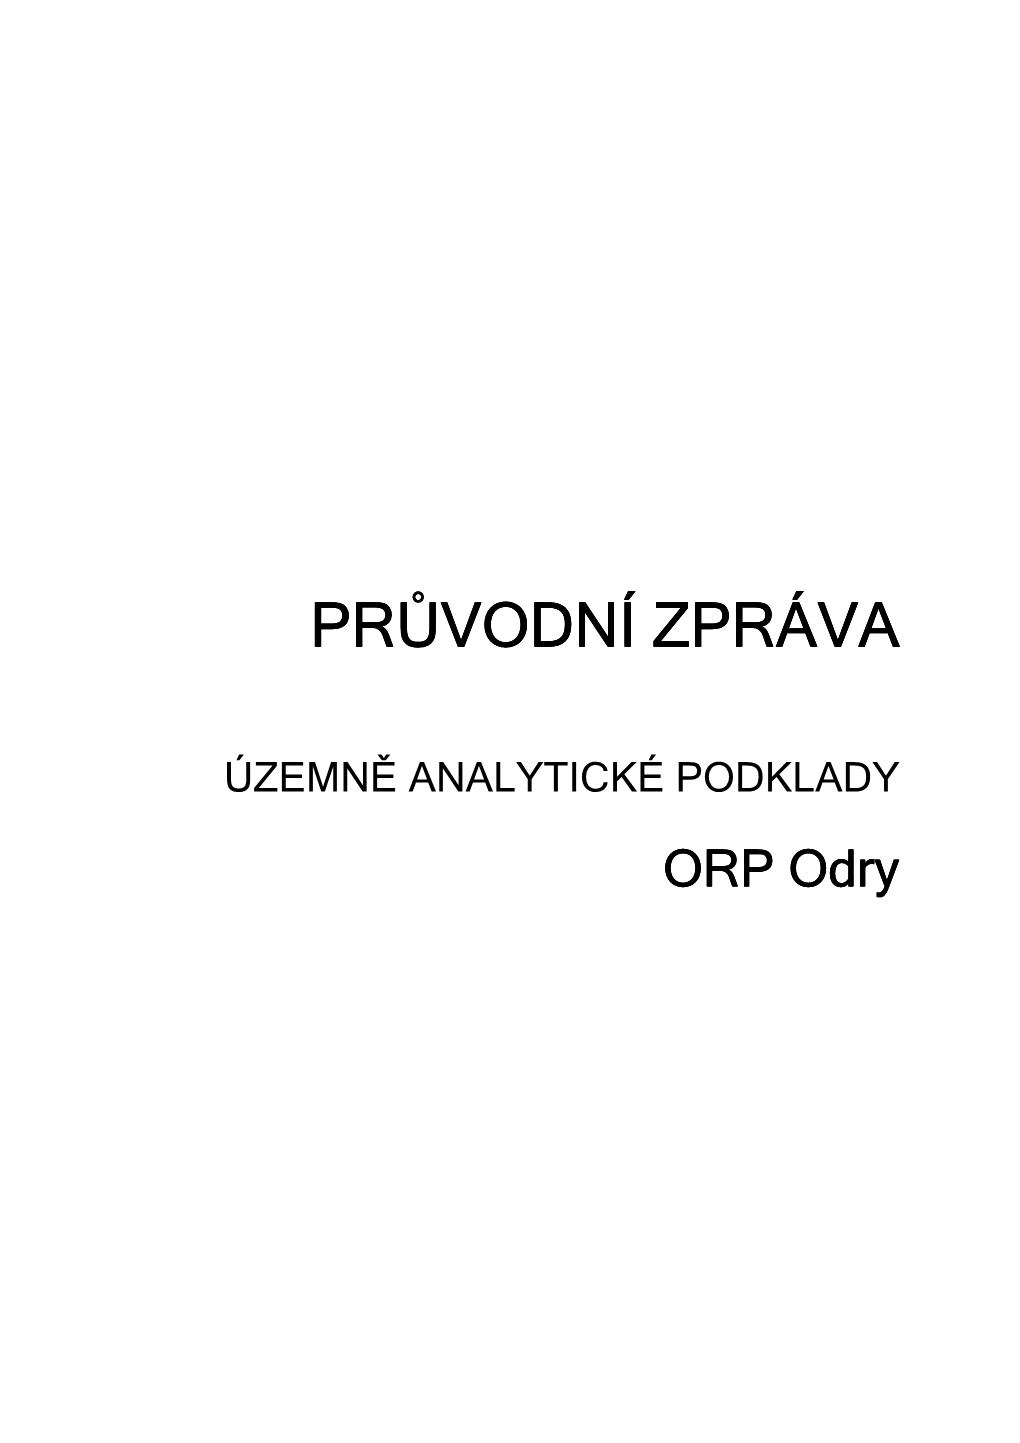 Podkladová Data ÚAP ORP Odry 2016